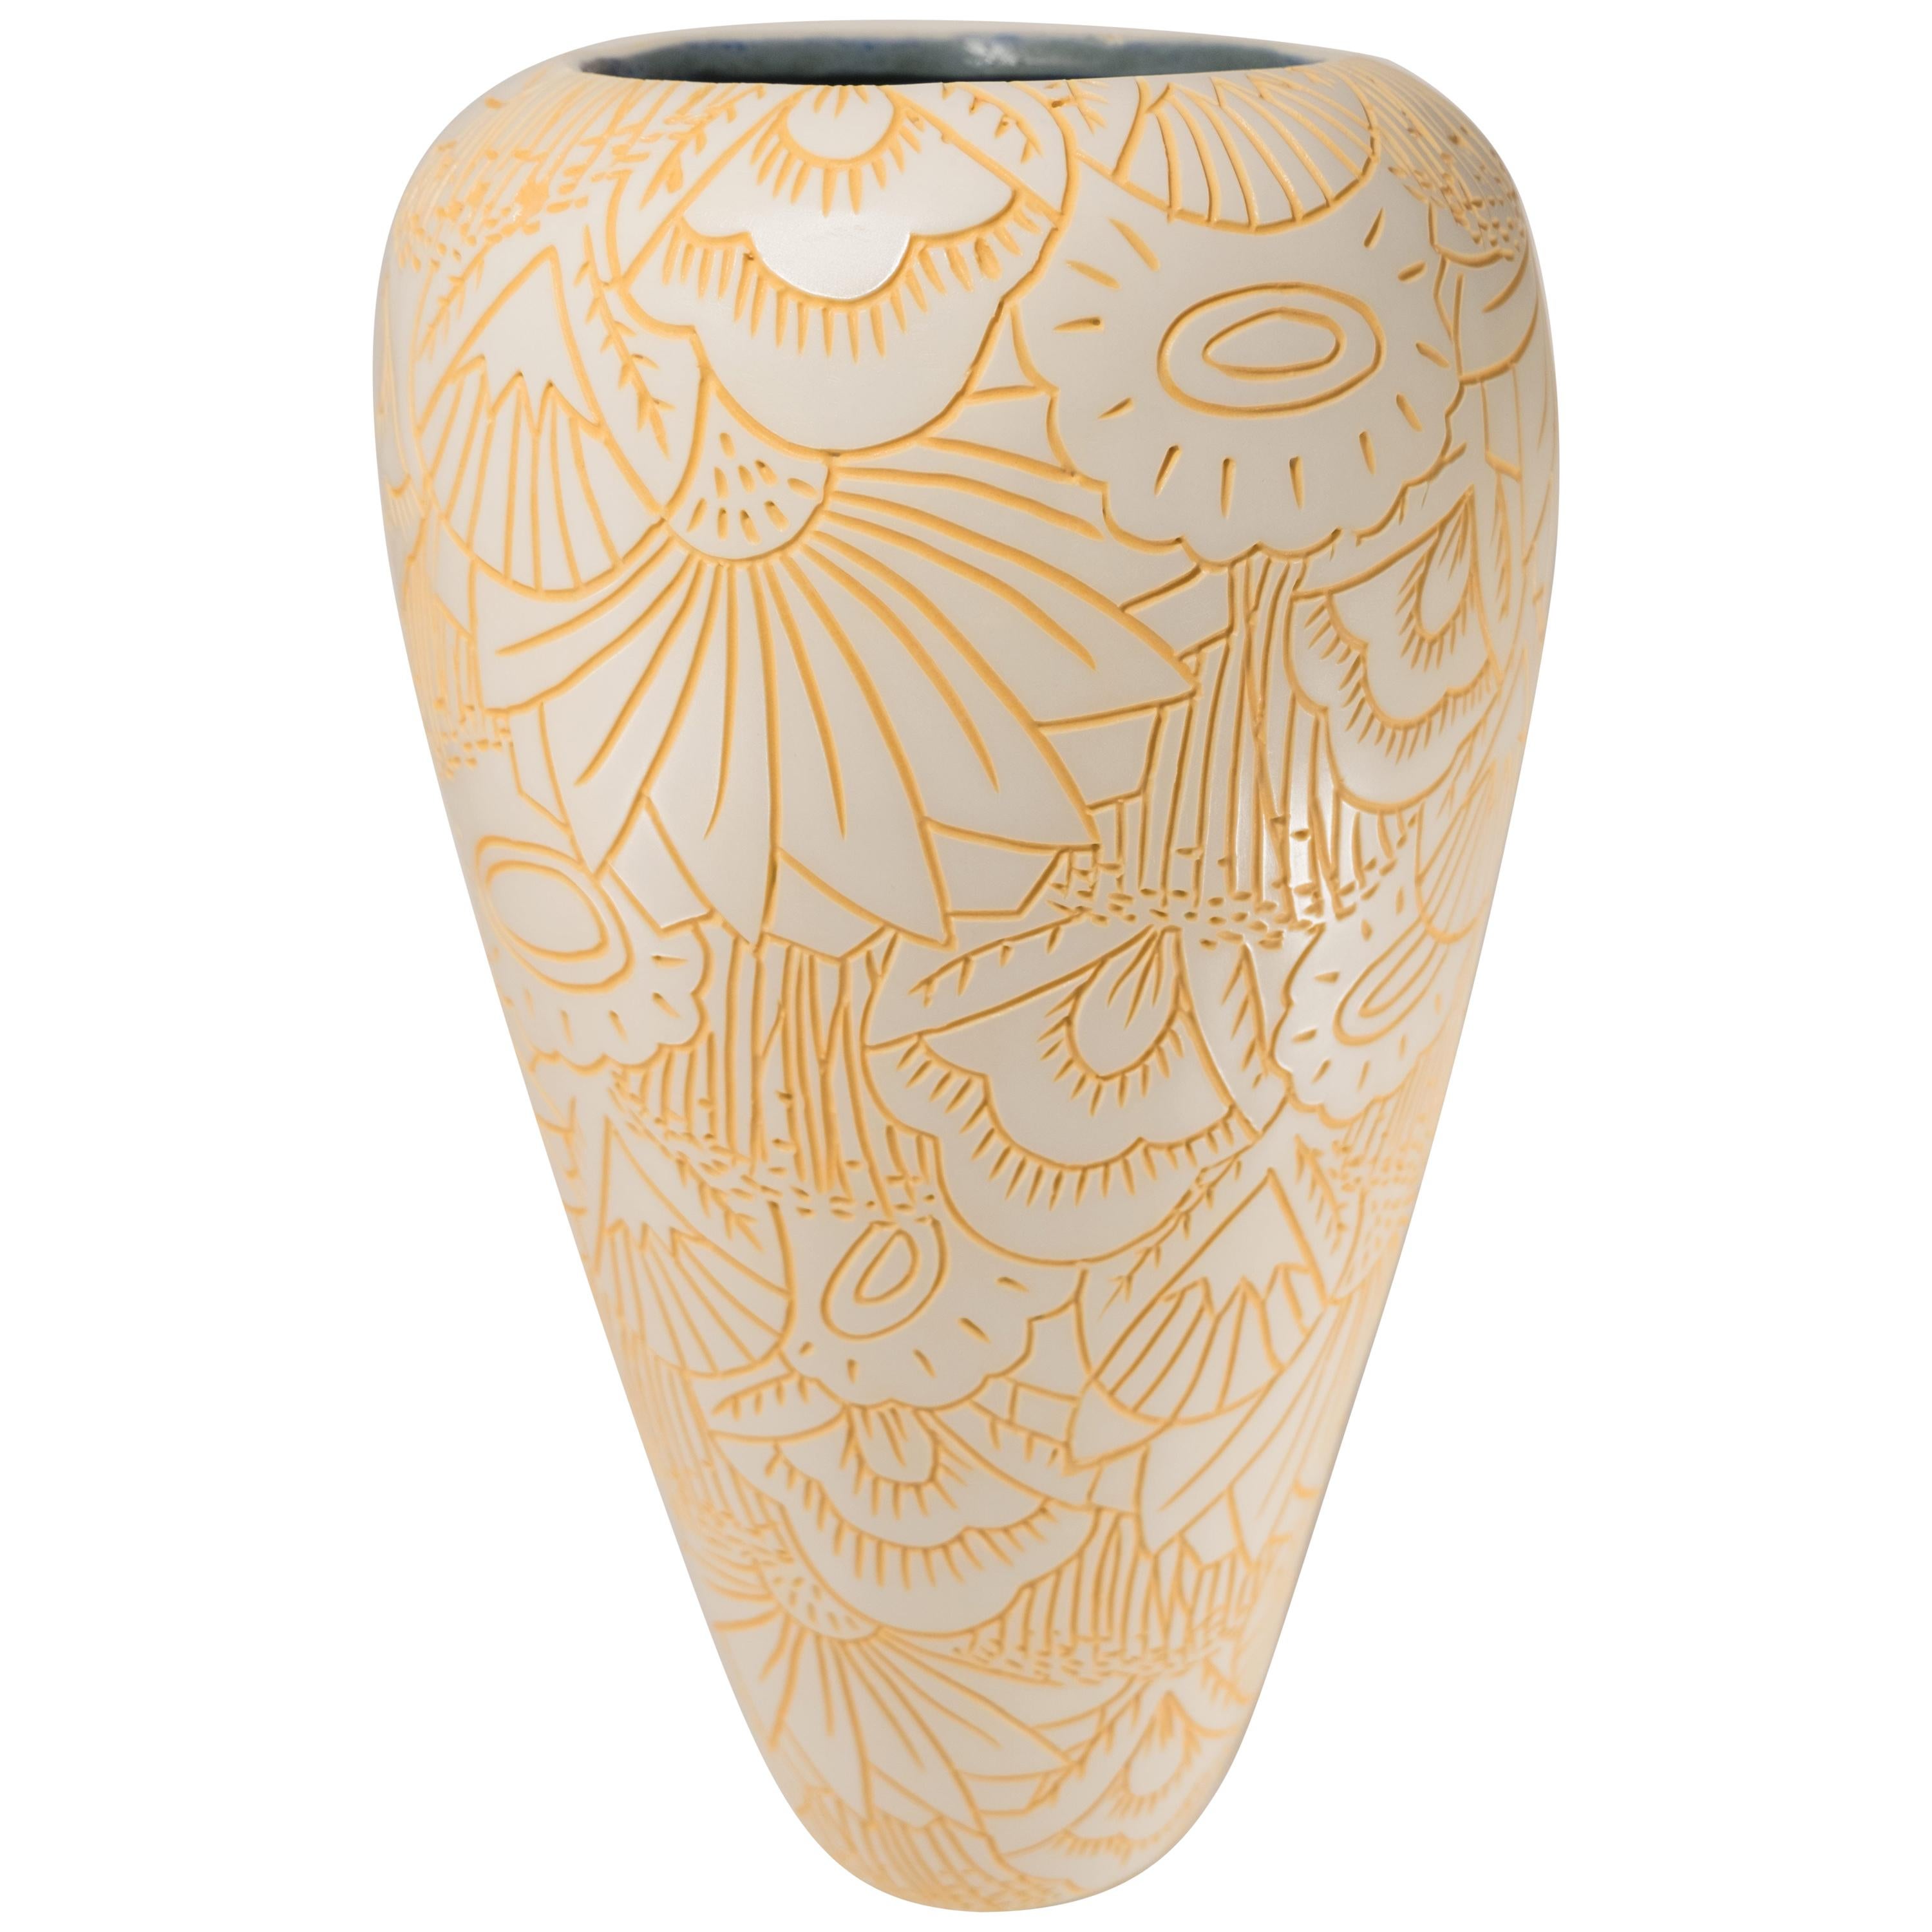 Extra Large "Garden" Design Hand Carved Porcelain Art Pottery Vase